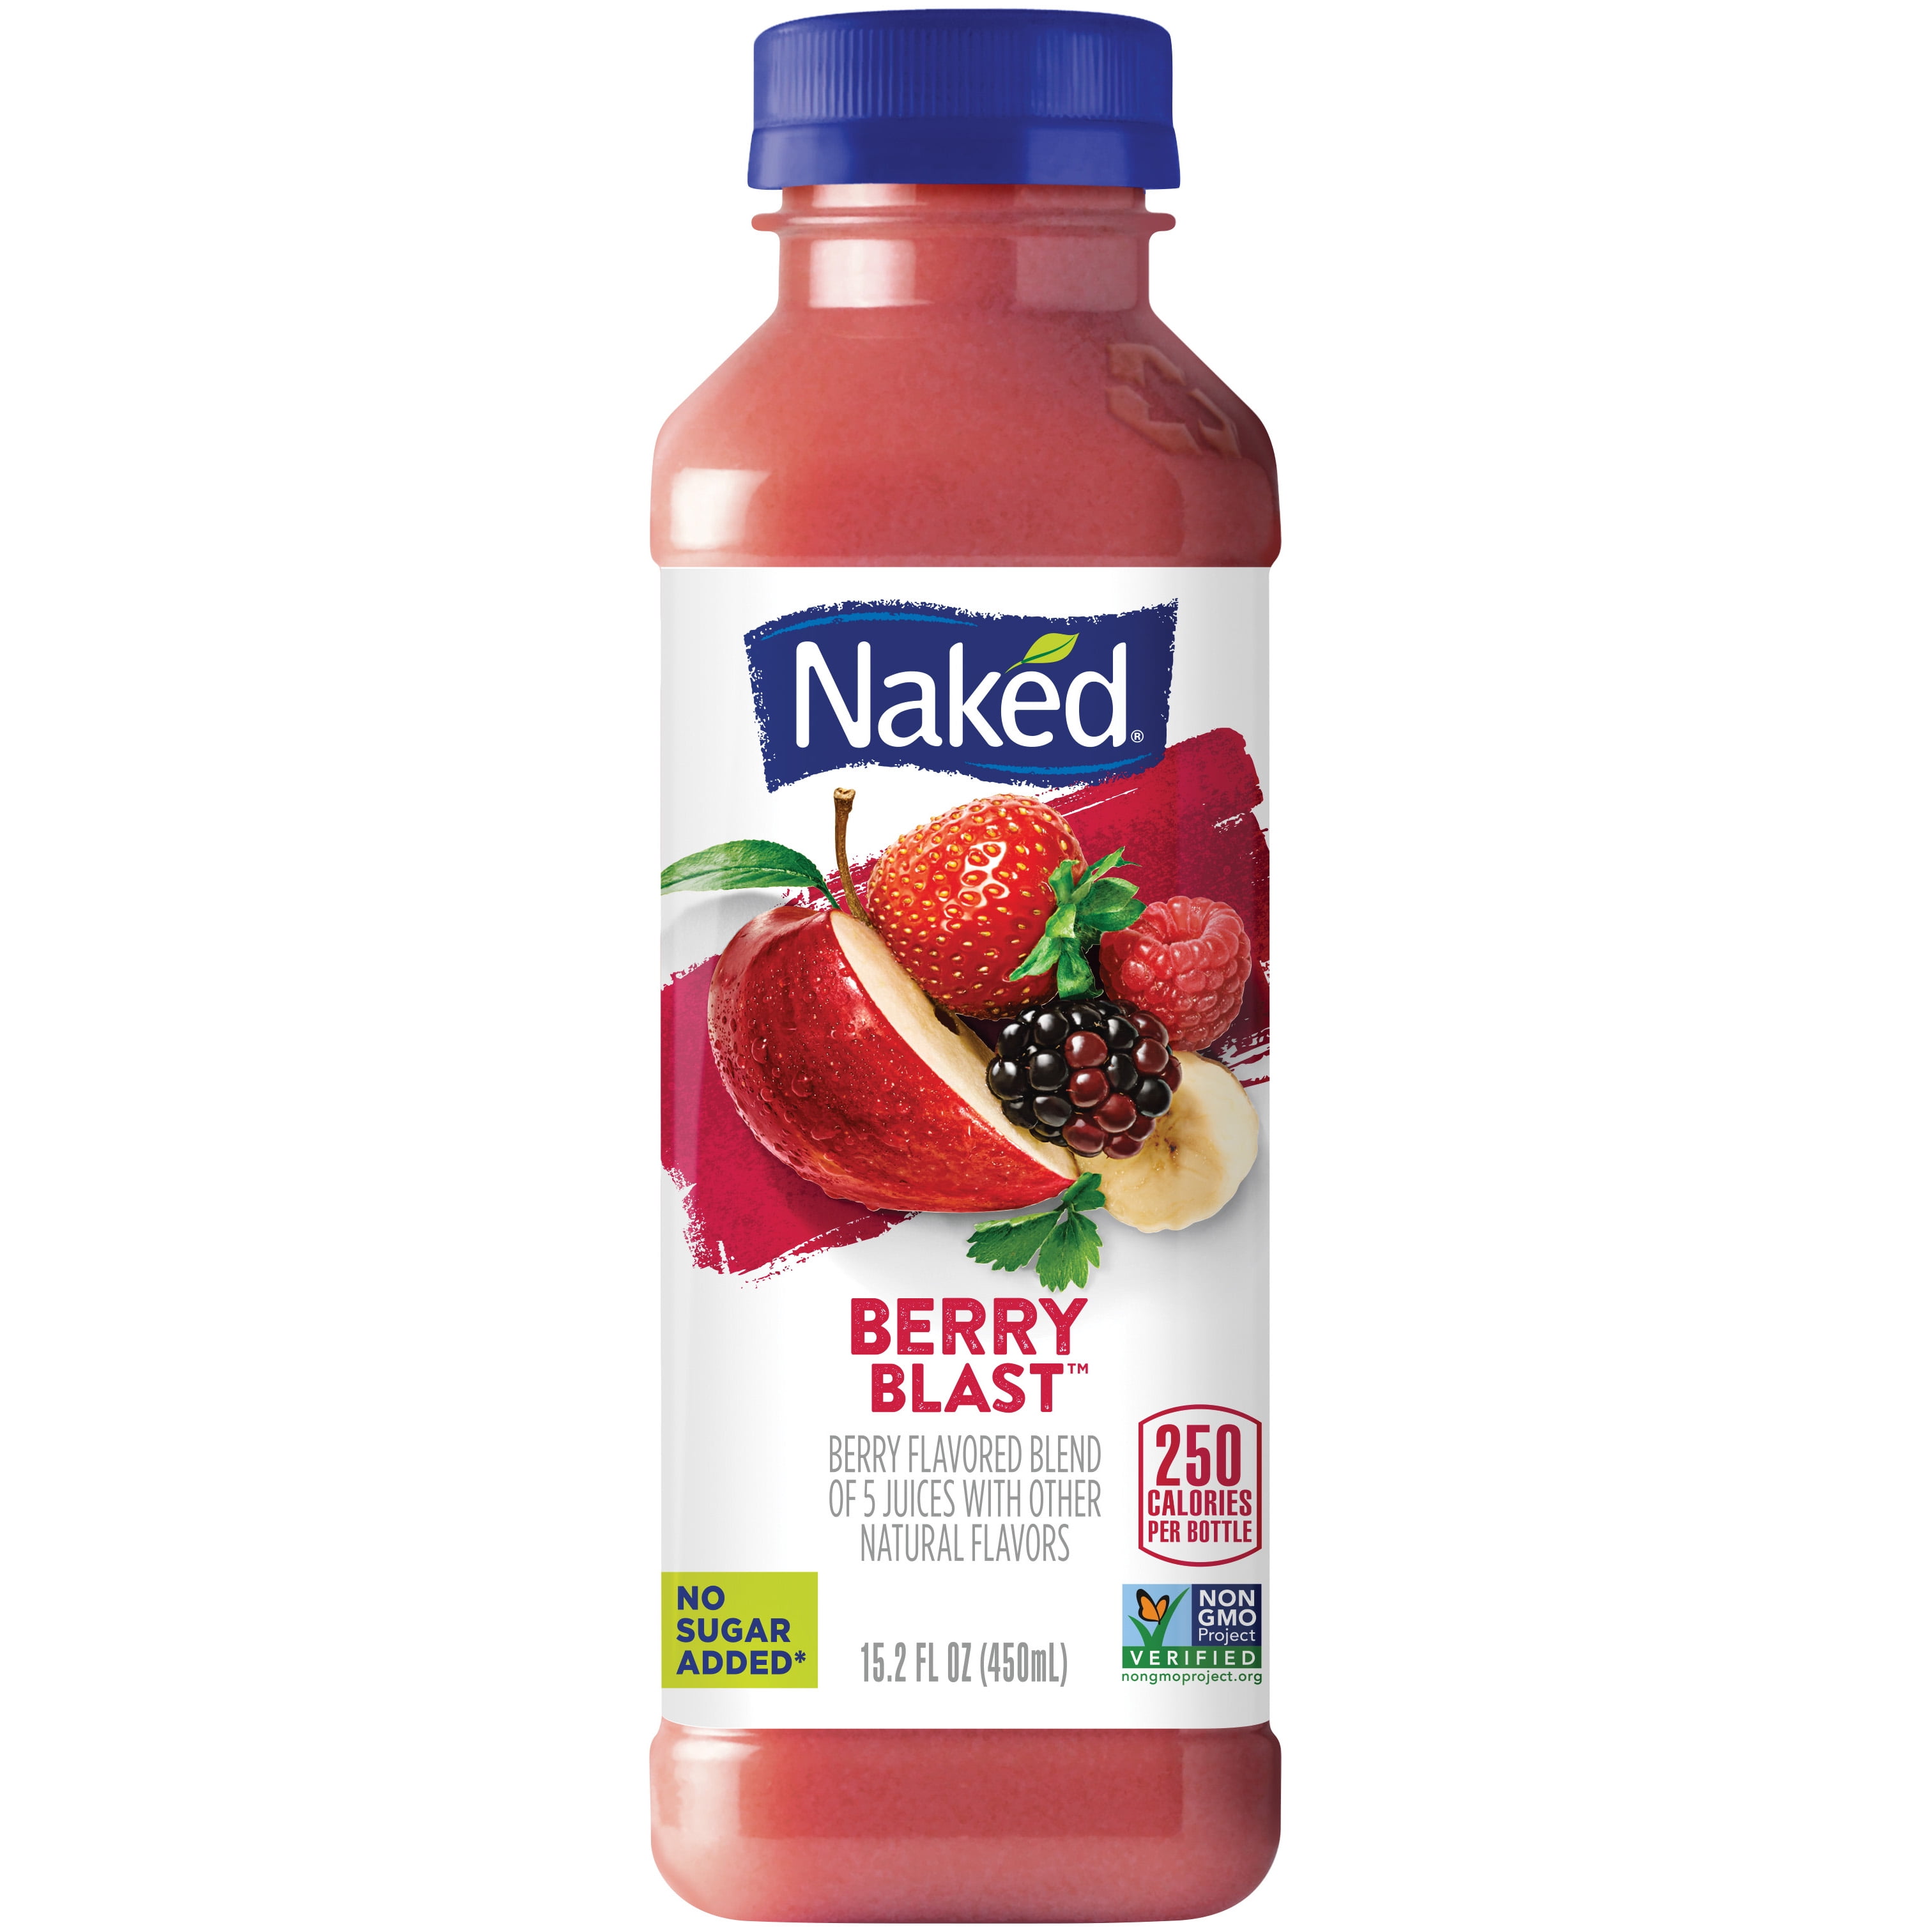 Naked At Walmart